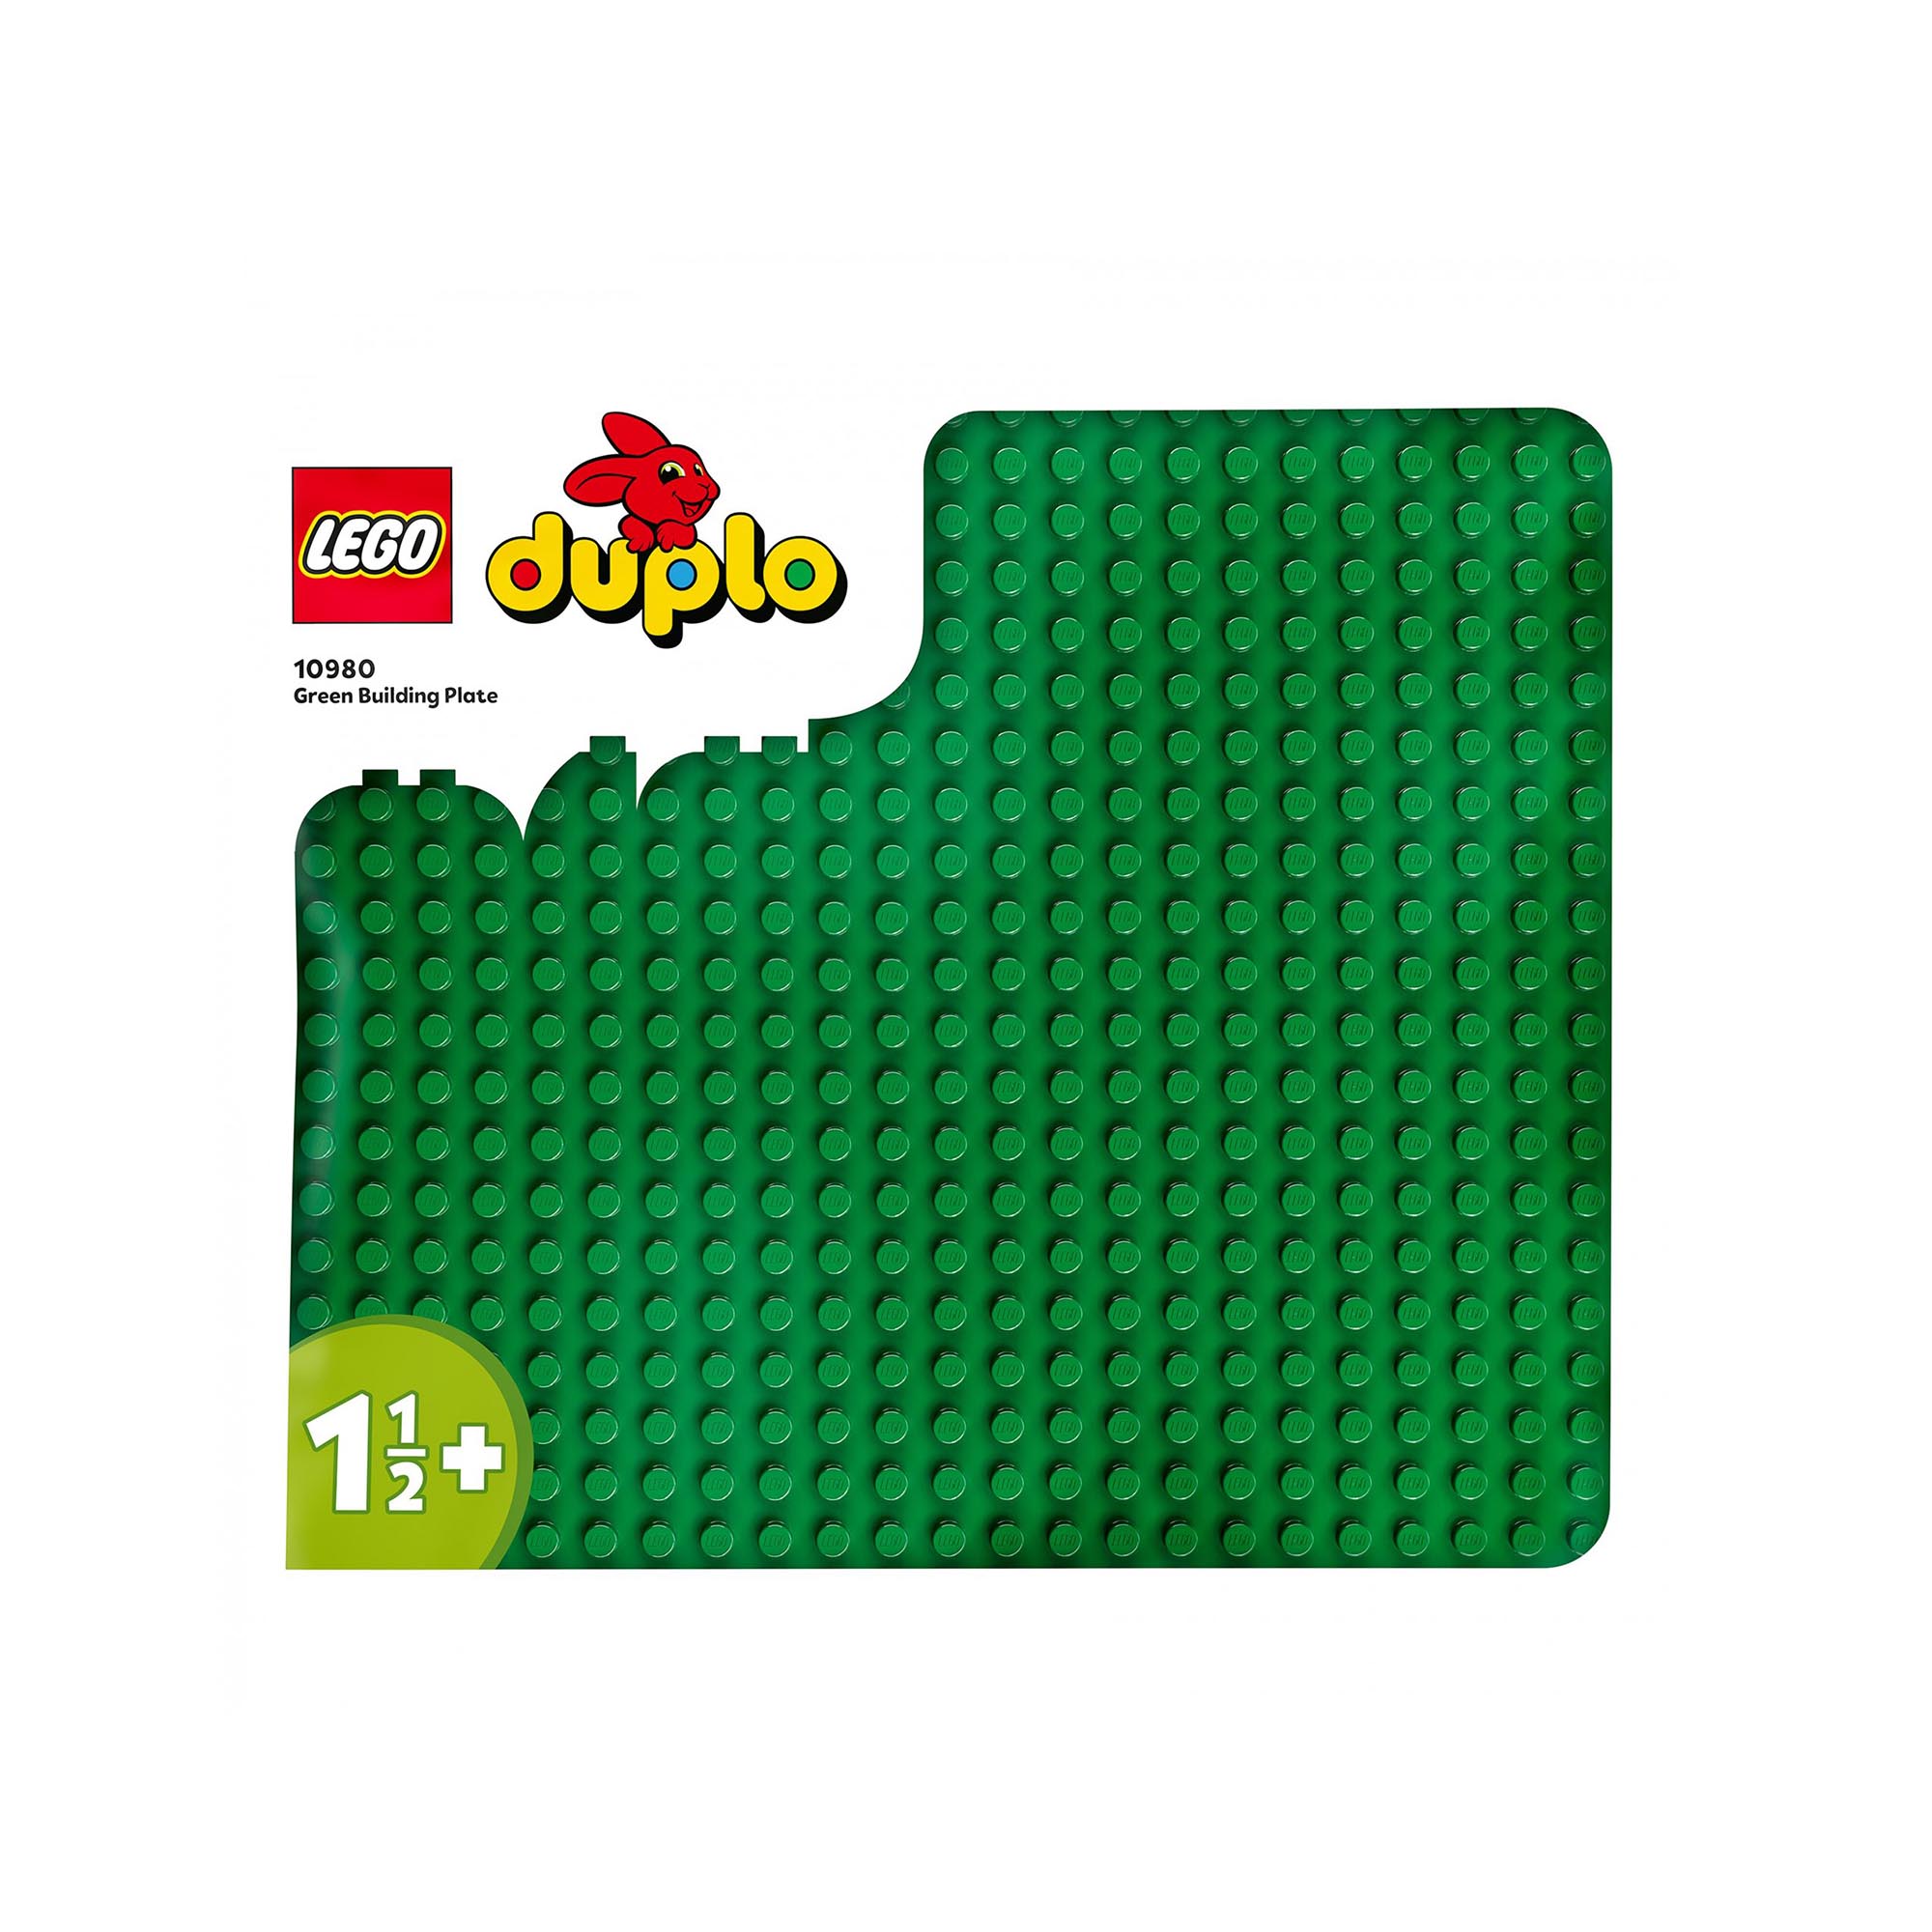 LEGO 10980 DUPLO Base Verde, Tavola Classica per Mattoncini, Piattaforma Giocatt 10980, , large